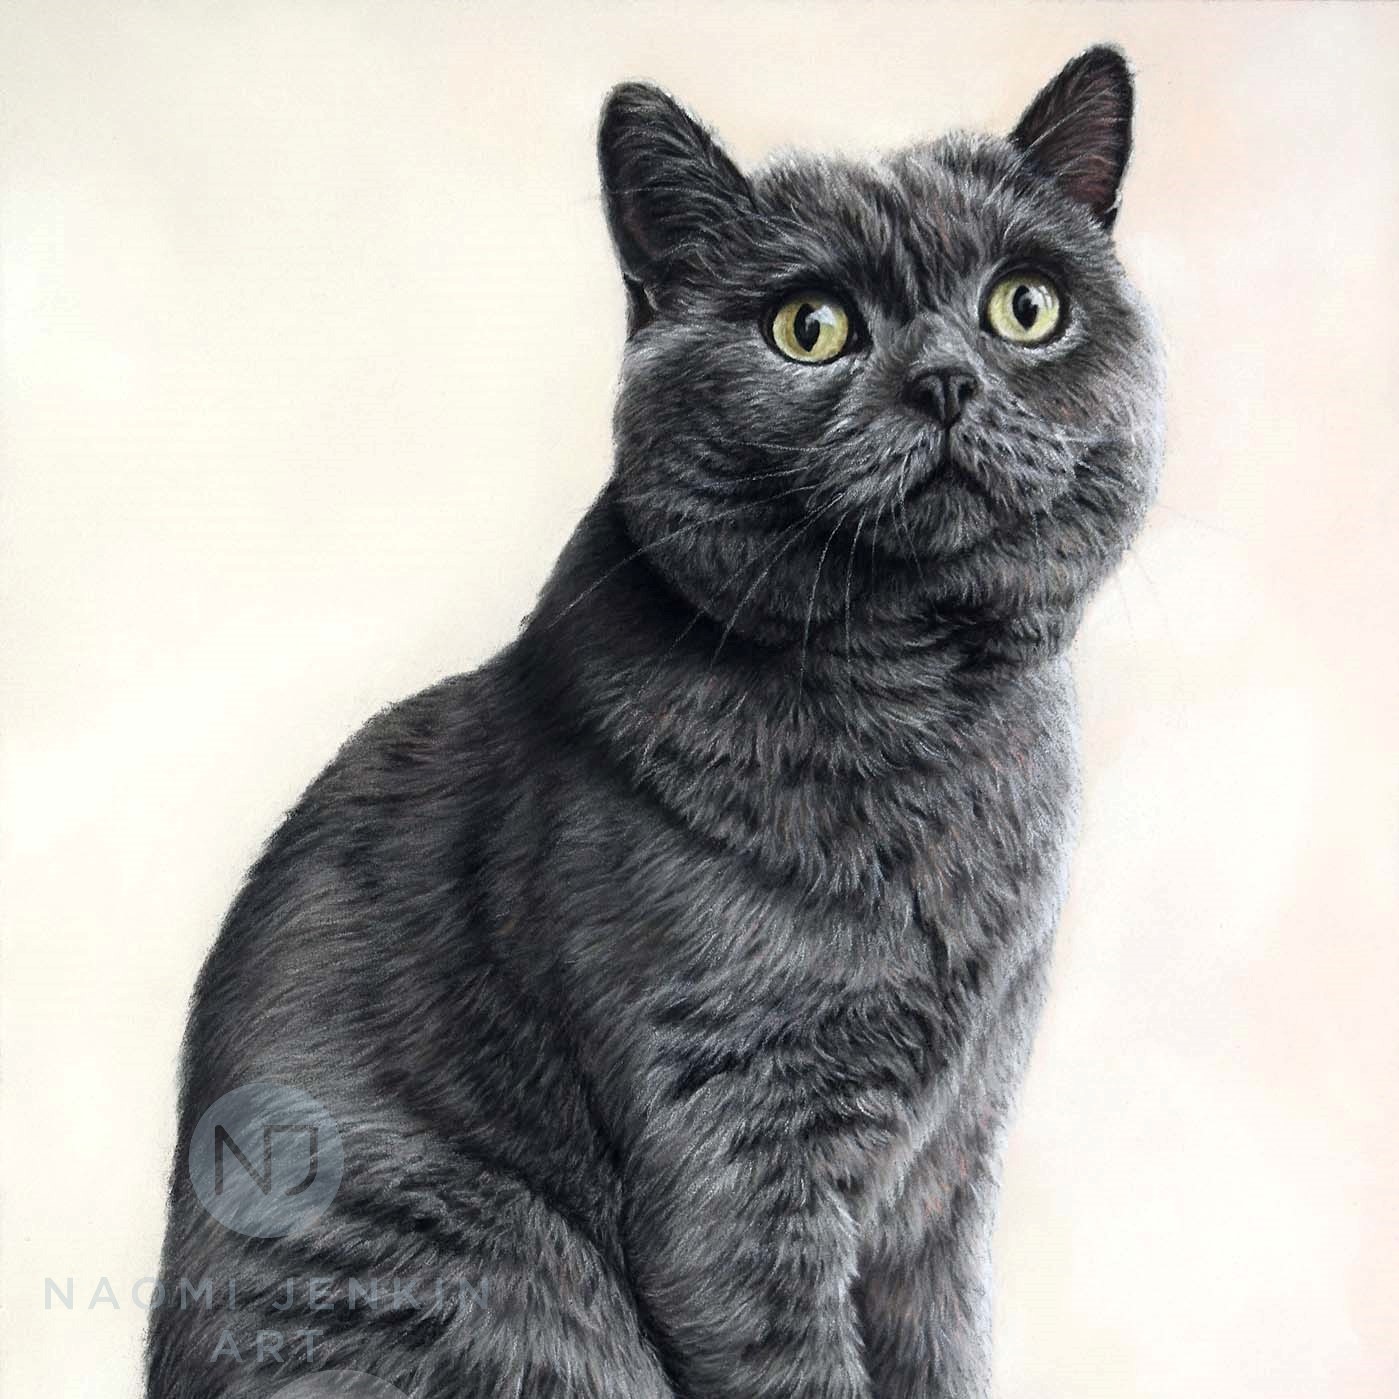 Pet portrait of cat by Naomi Jenkin.